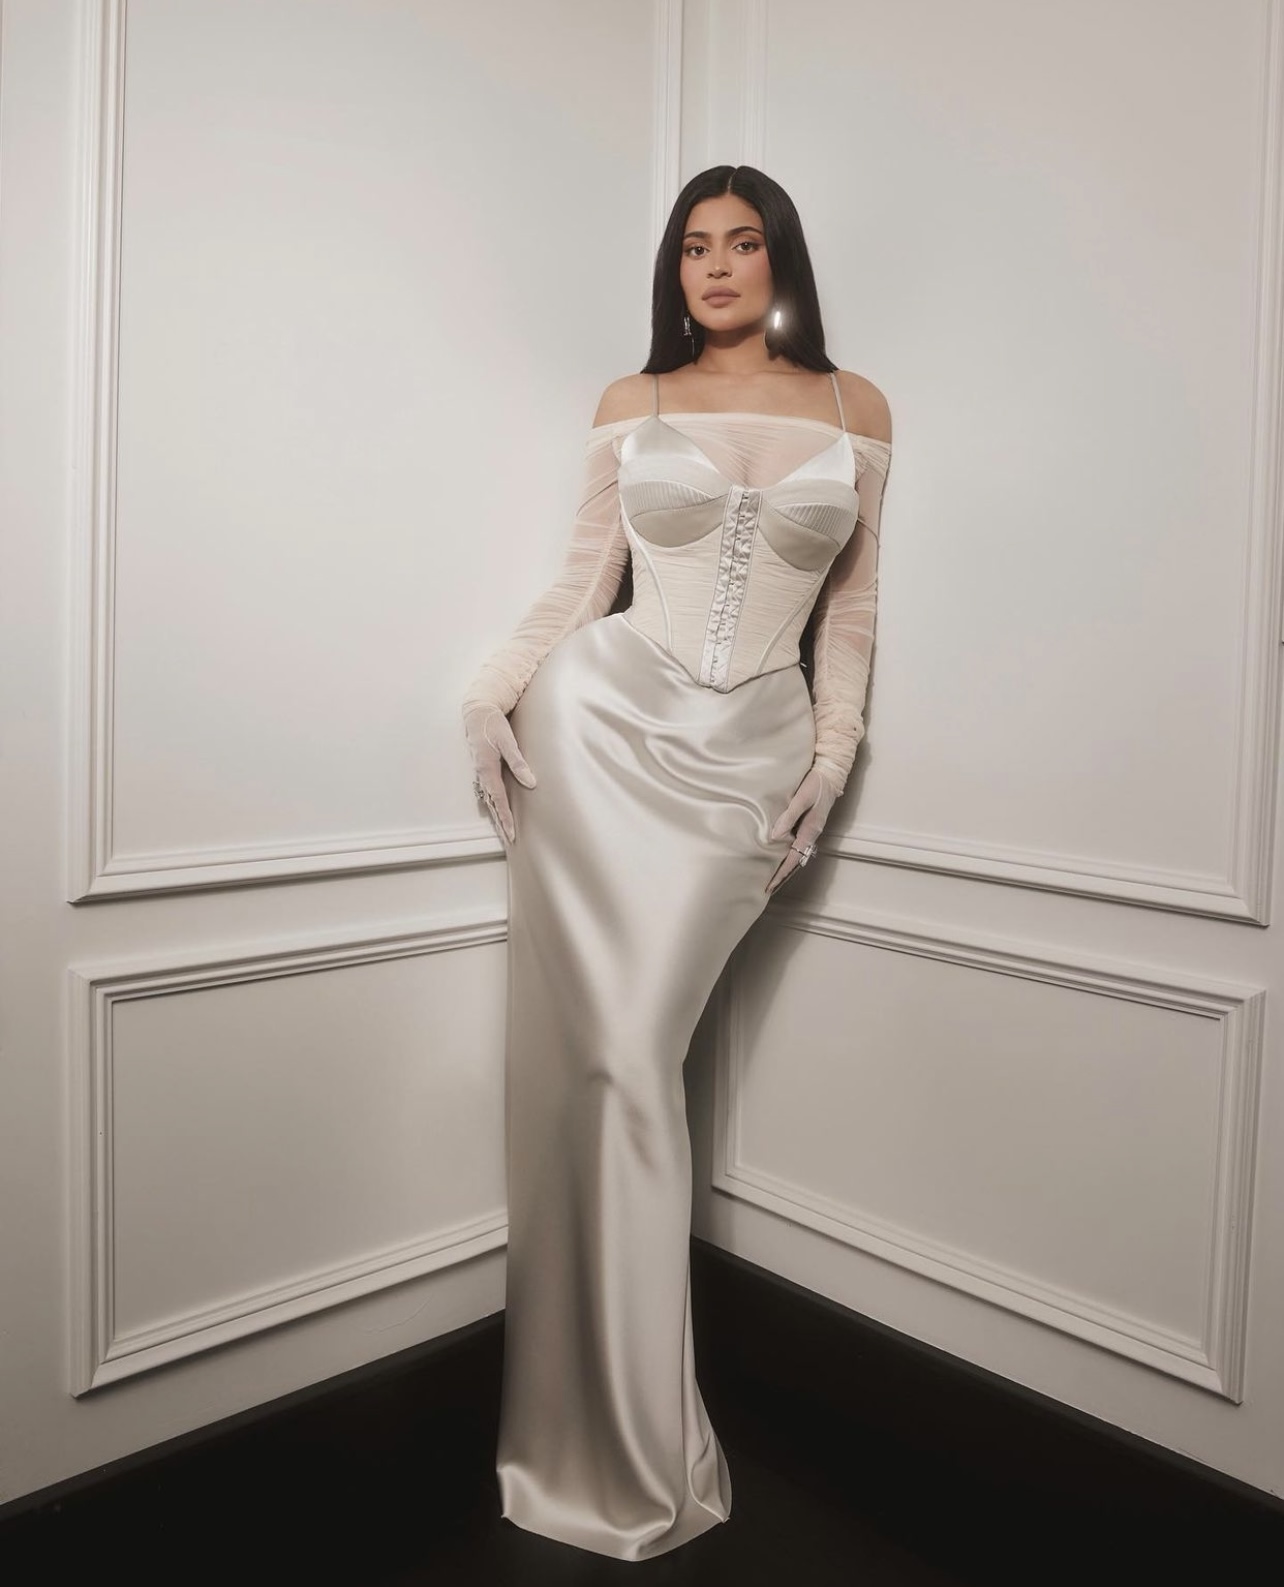 Kylie Jenner Sparks Engagement Rumors In An All White Dress Celeb Secrets